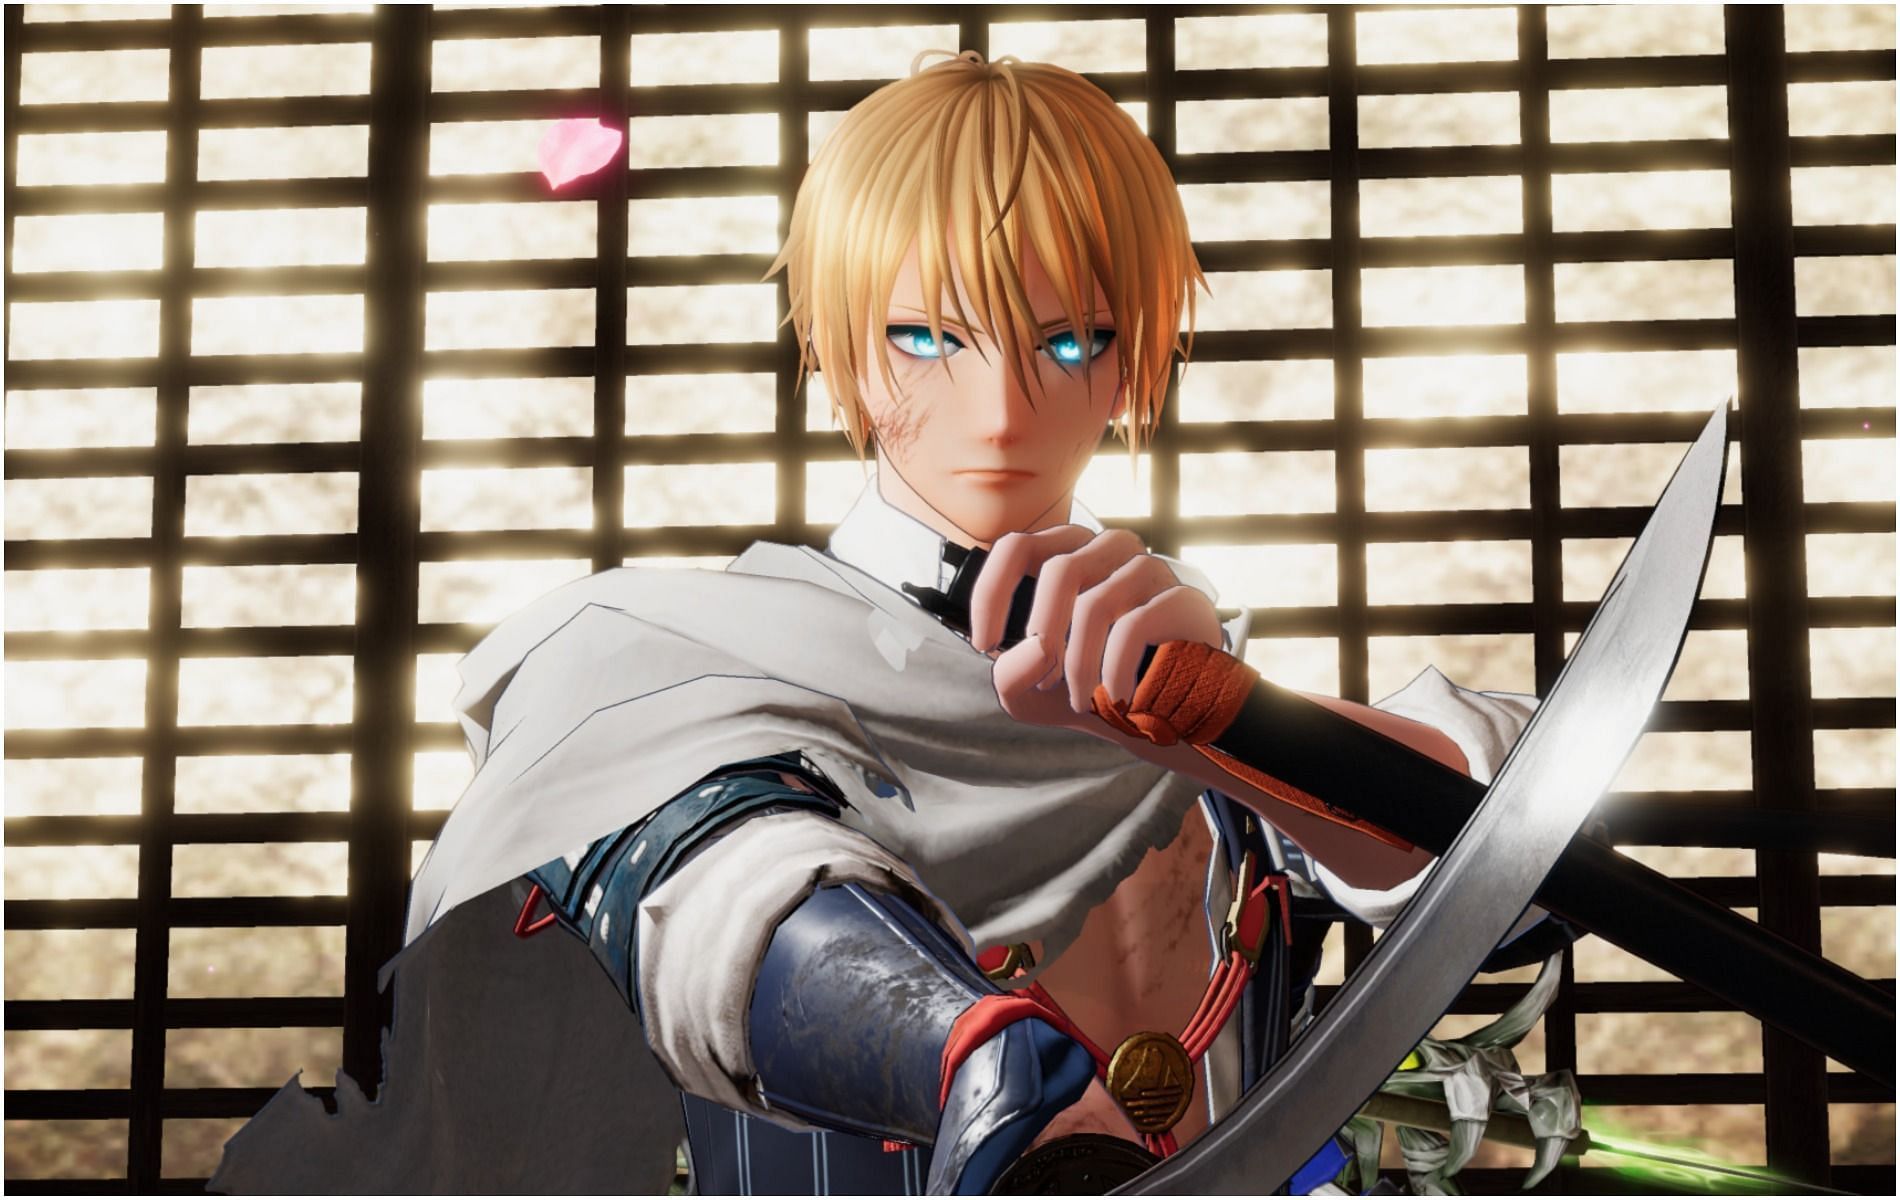 Code Anime Warriors Simulator 2 mới nhất và cách nhập code - QuanTriMang.com